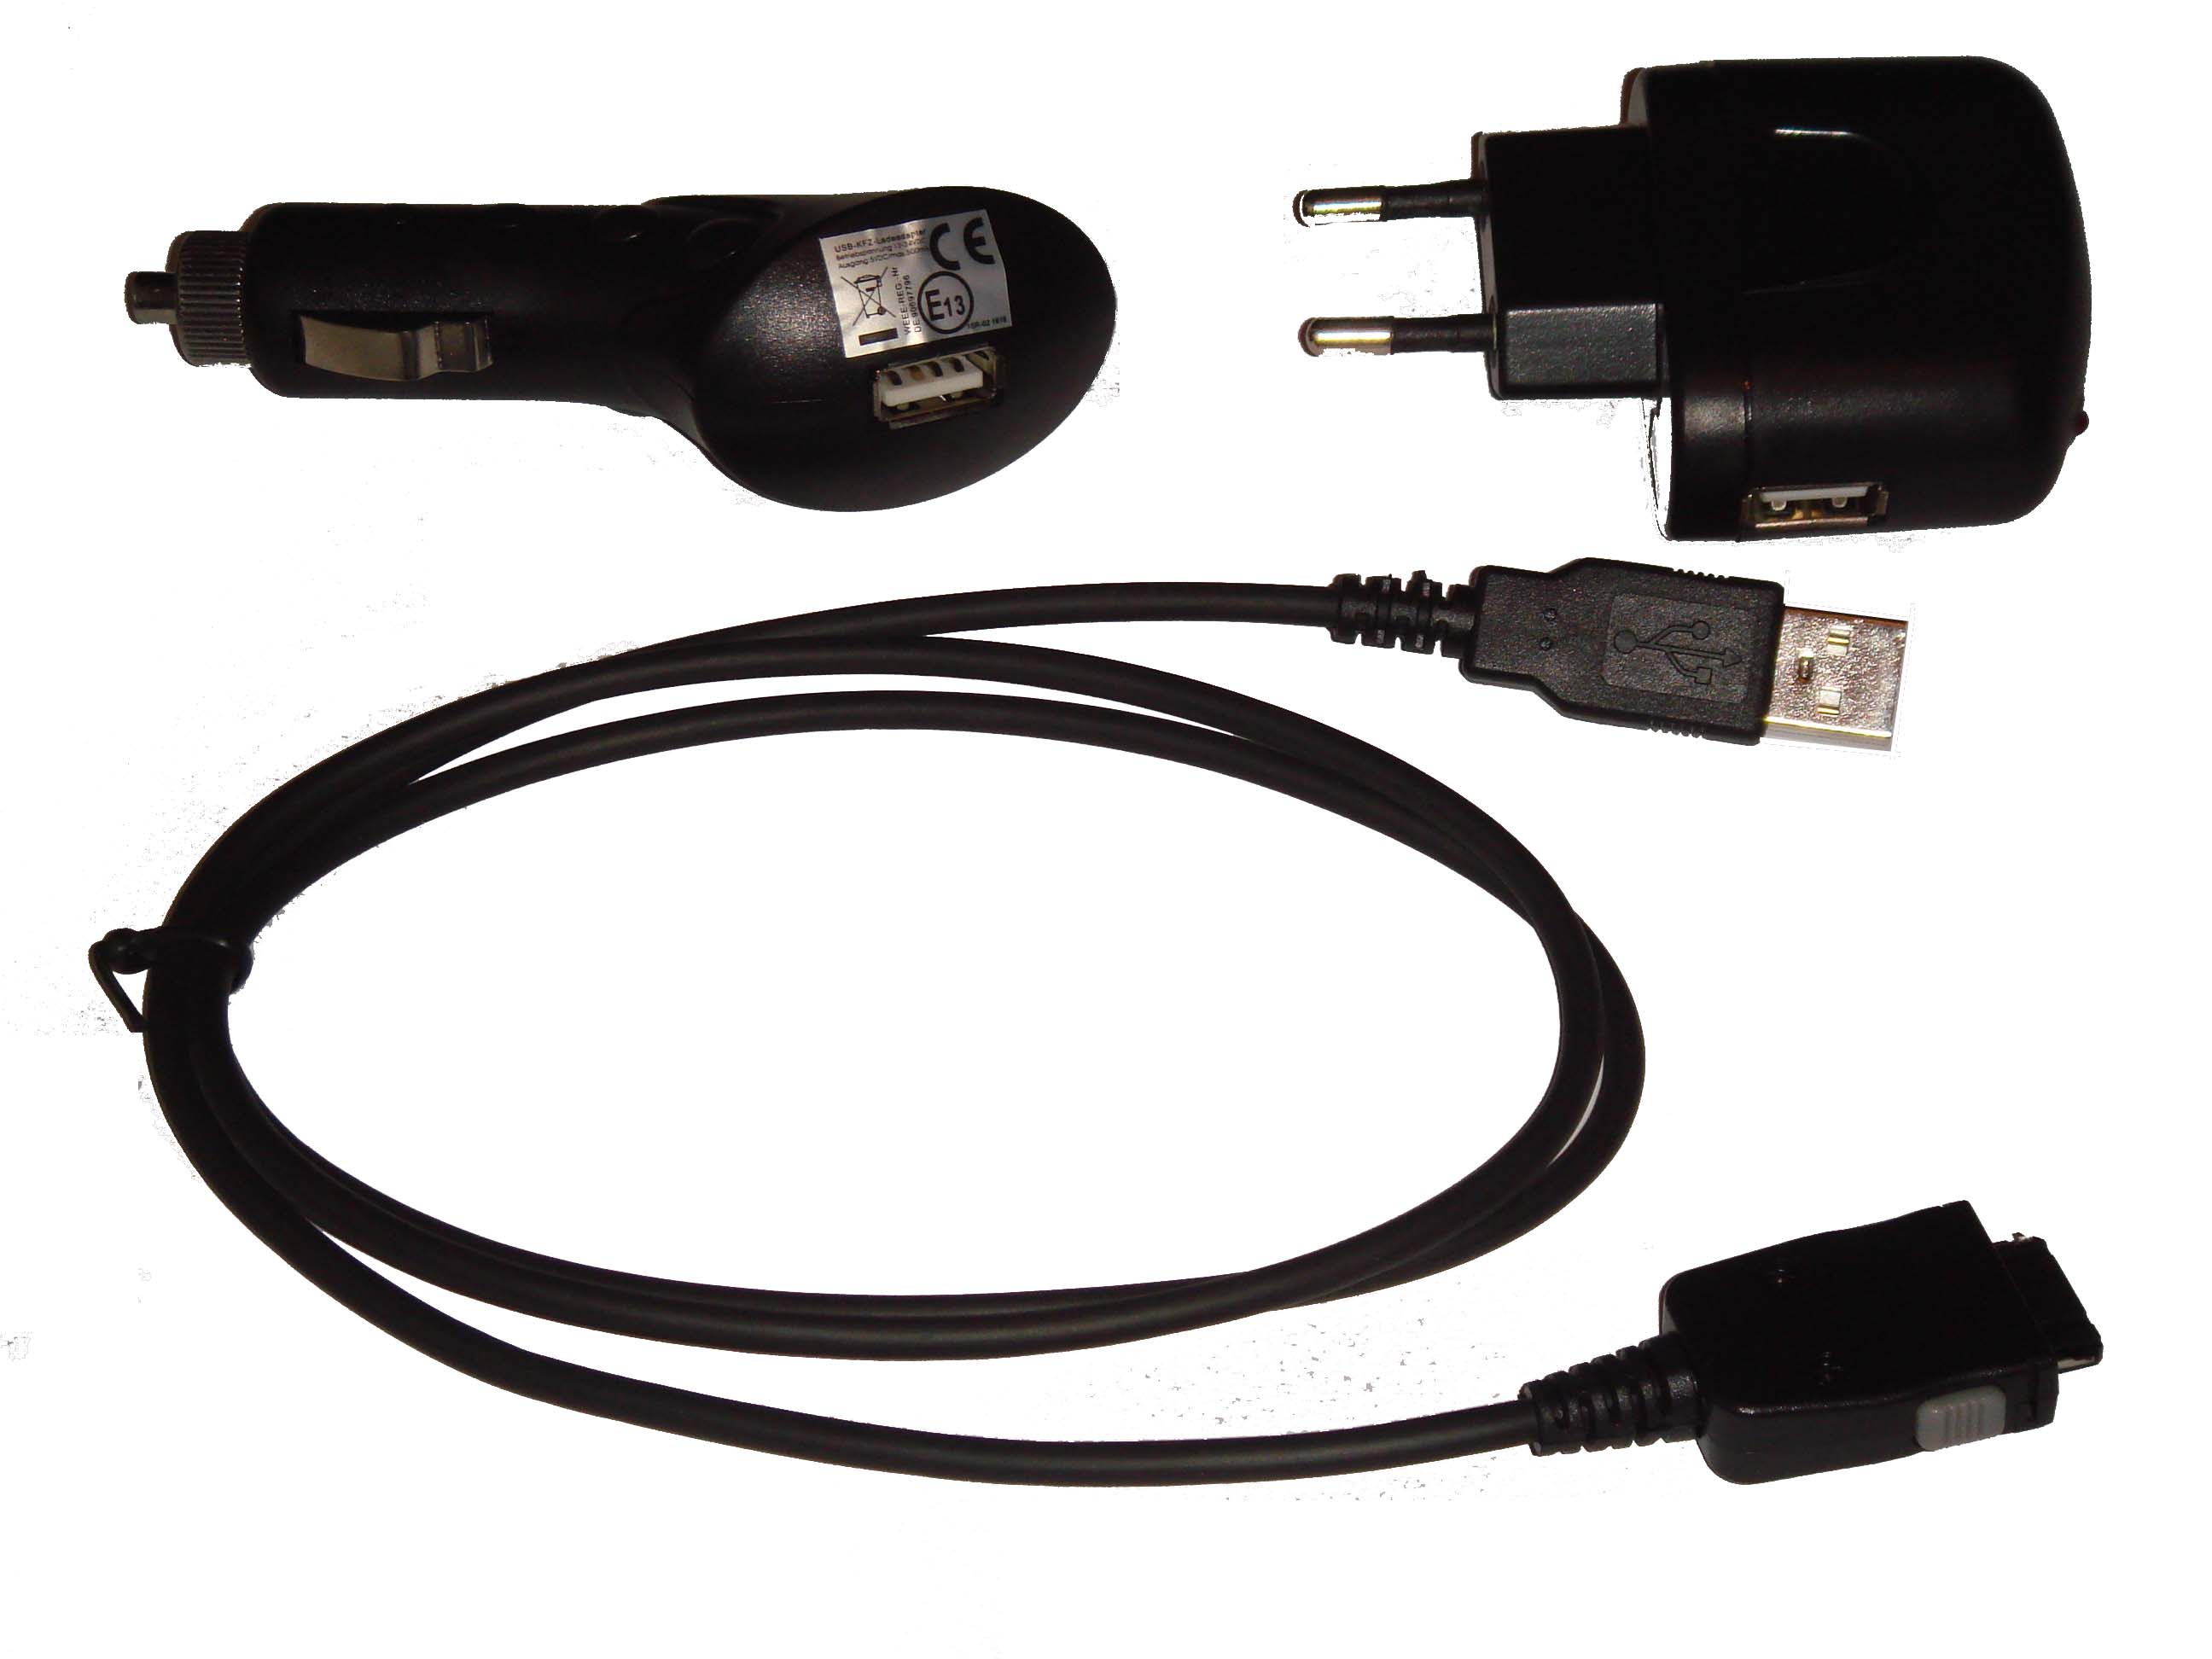 Lot d'accessoires compatible avec Yakumo Delta X navigation - Adaptateurs allume-cigare, secteur, câble USB